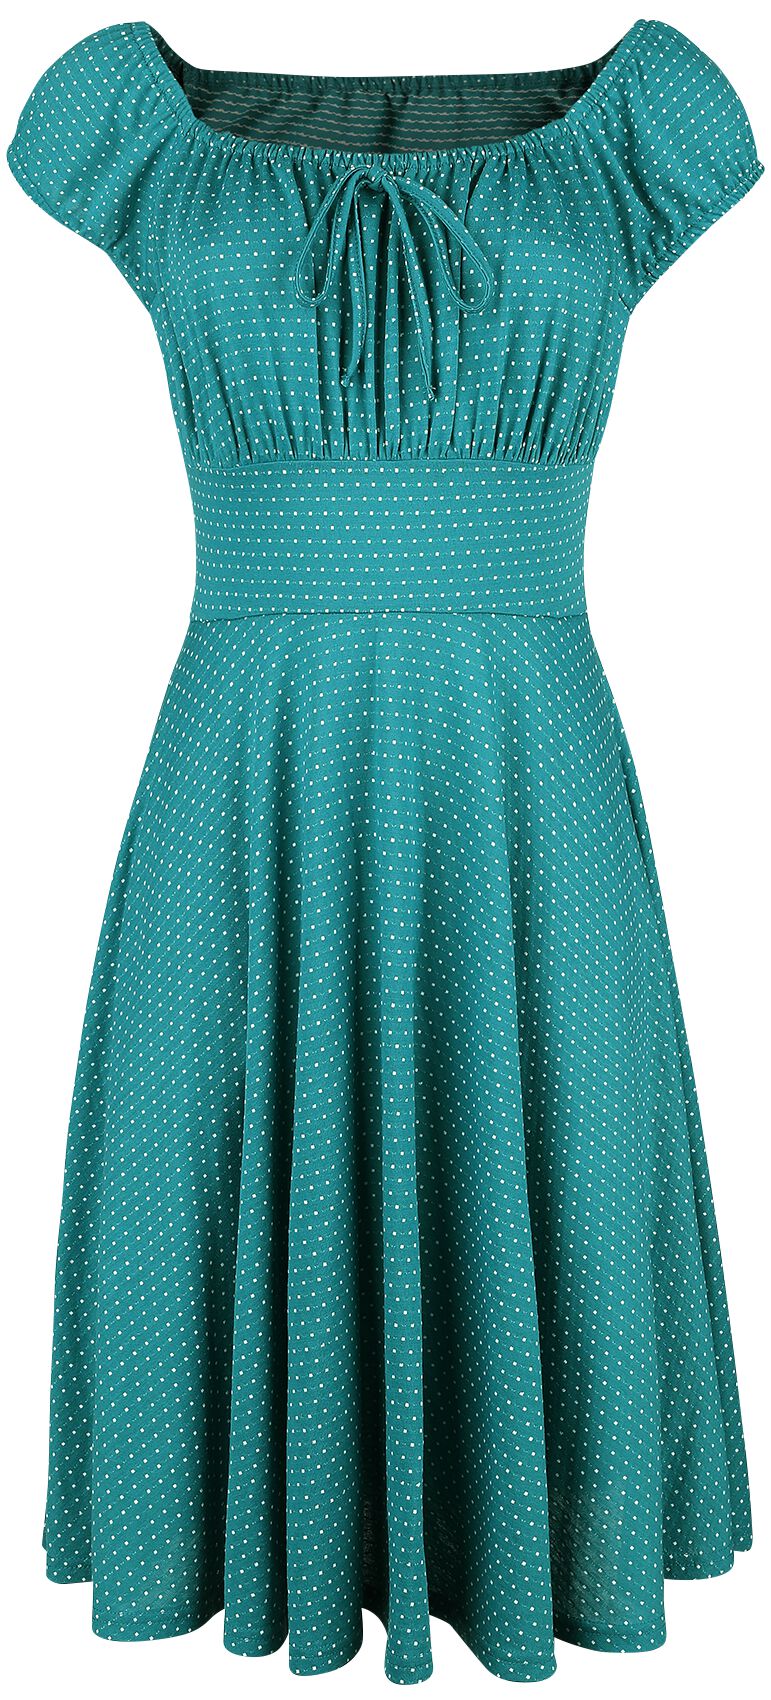 Voodoo Vixen - Rockabilly Kleid knielang - Tessy Green Gathered Dress - XS bis 4XL - für Damen - Größe XXL - petrol